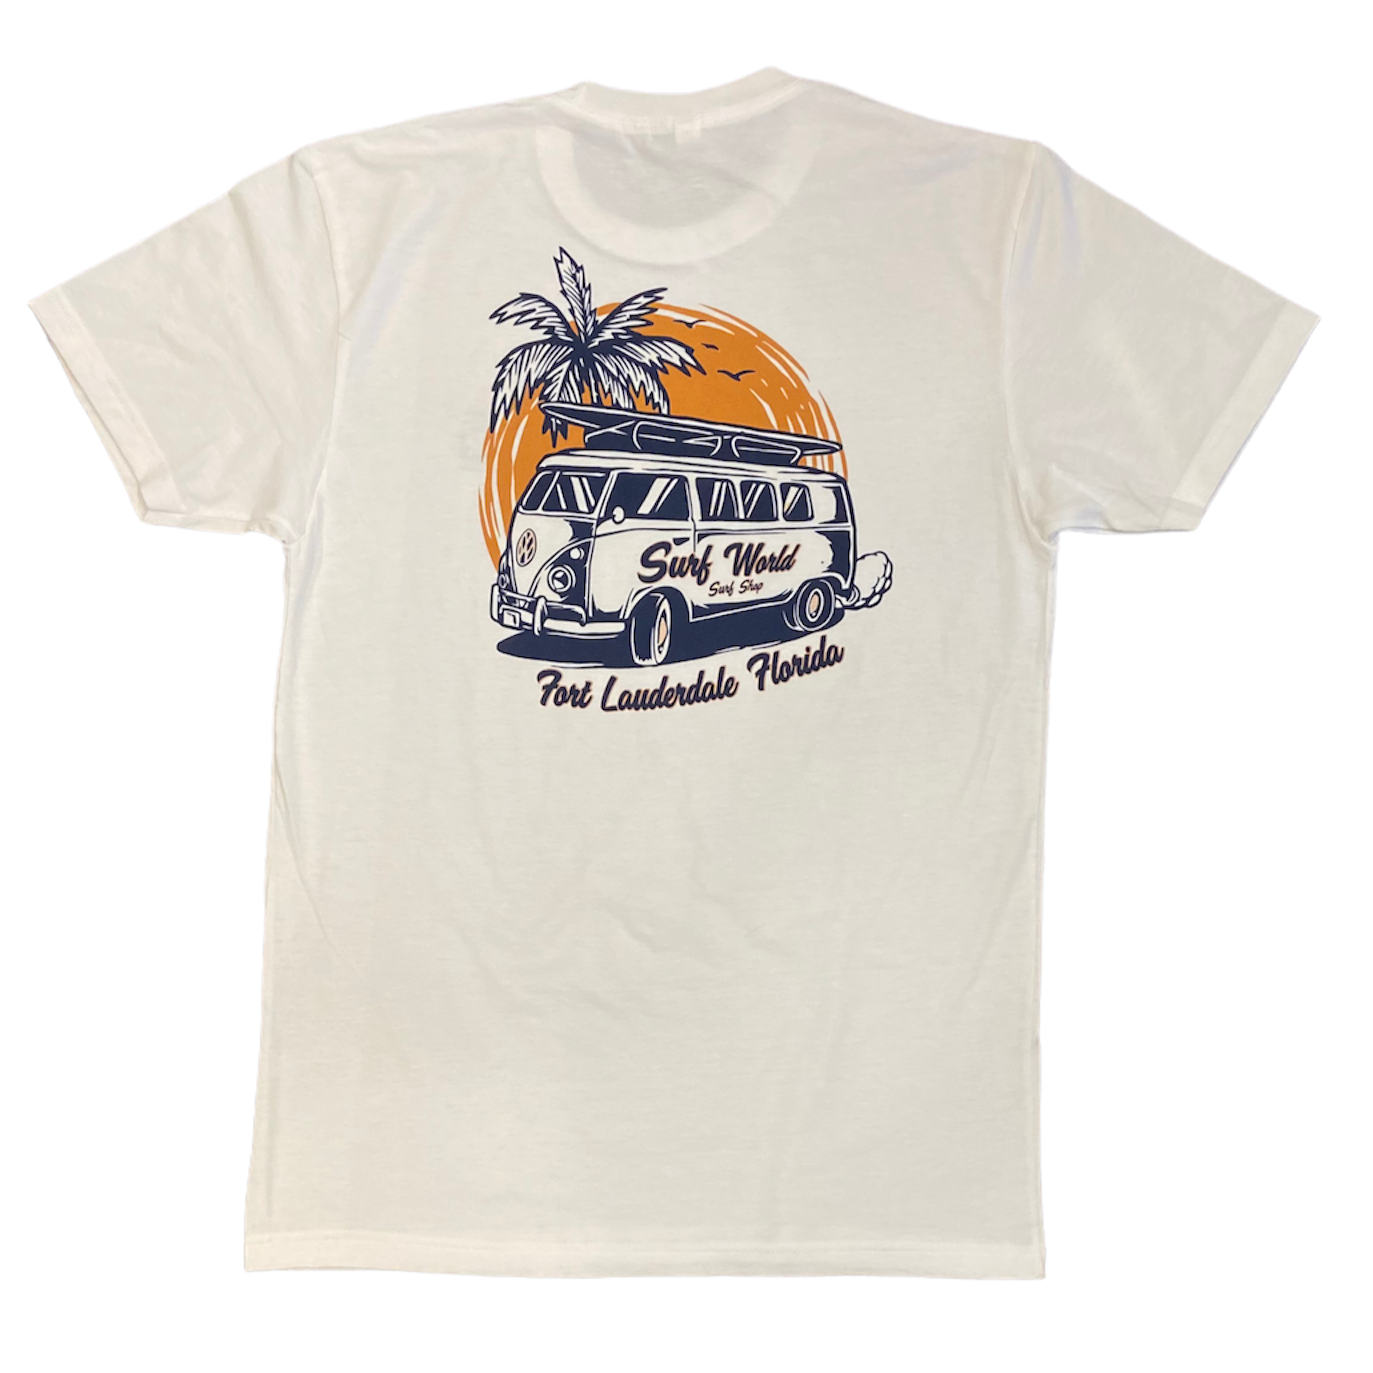 Surf World Classic VW Bus Surfing Tee - White - Light Blue Mens T Shirt White